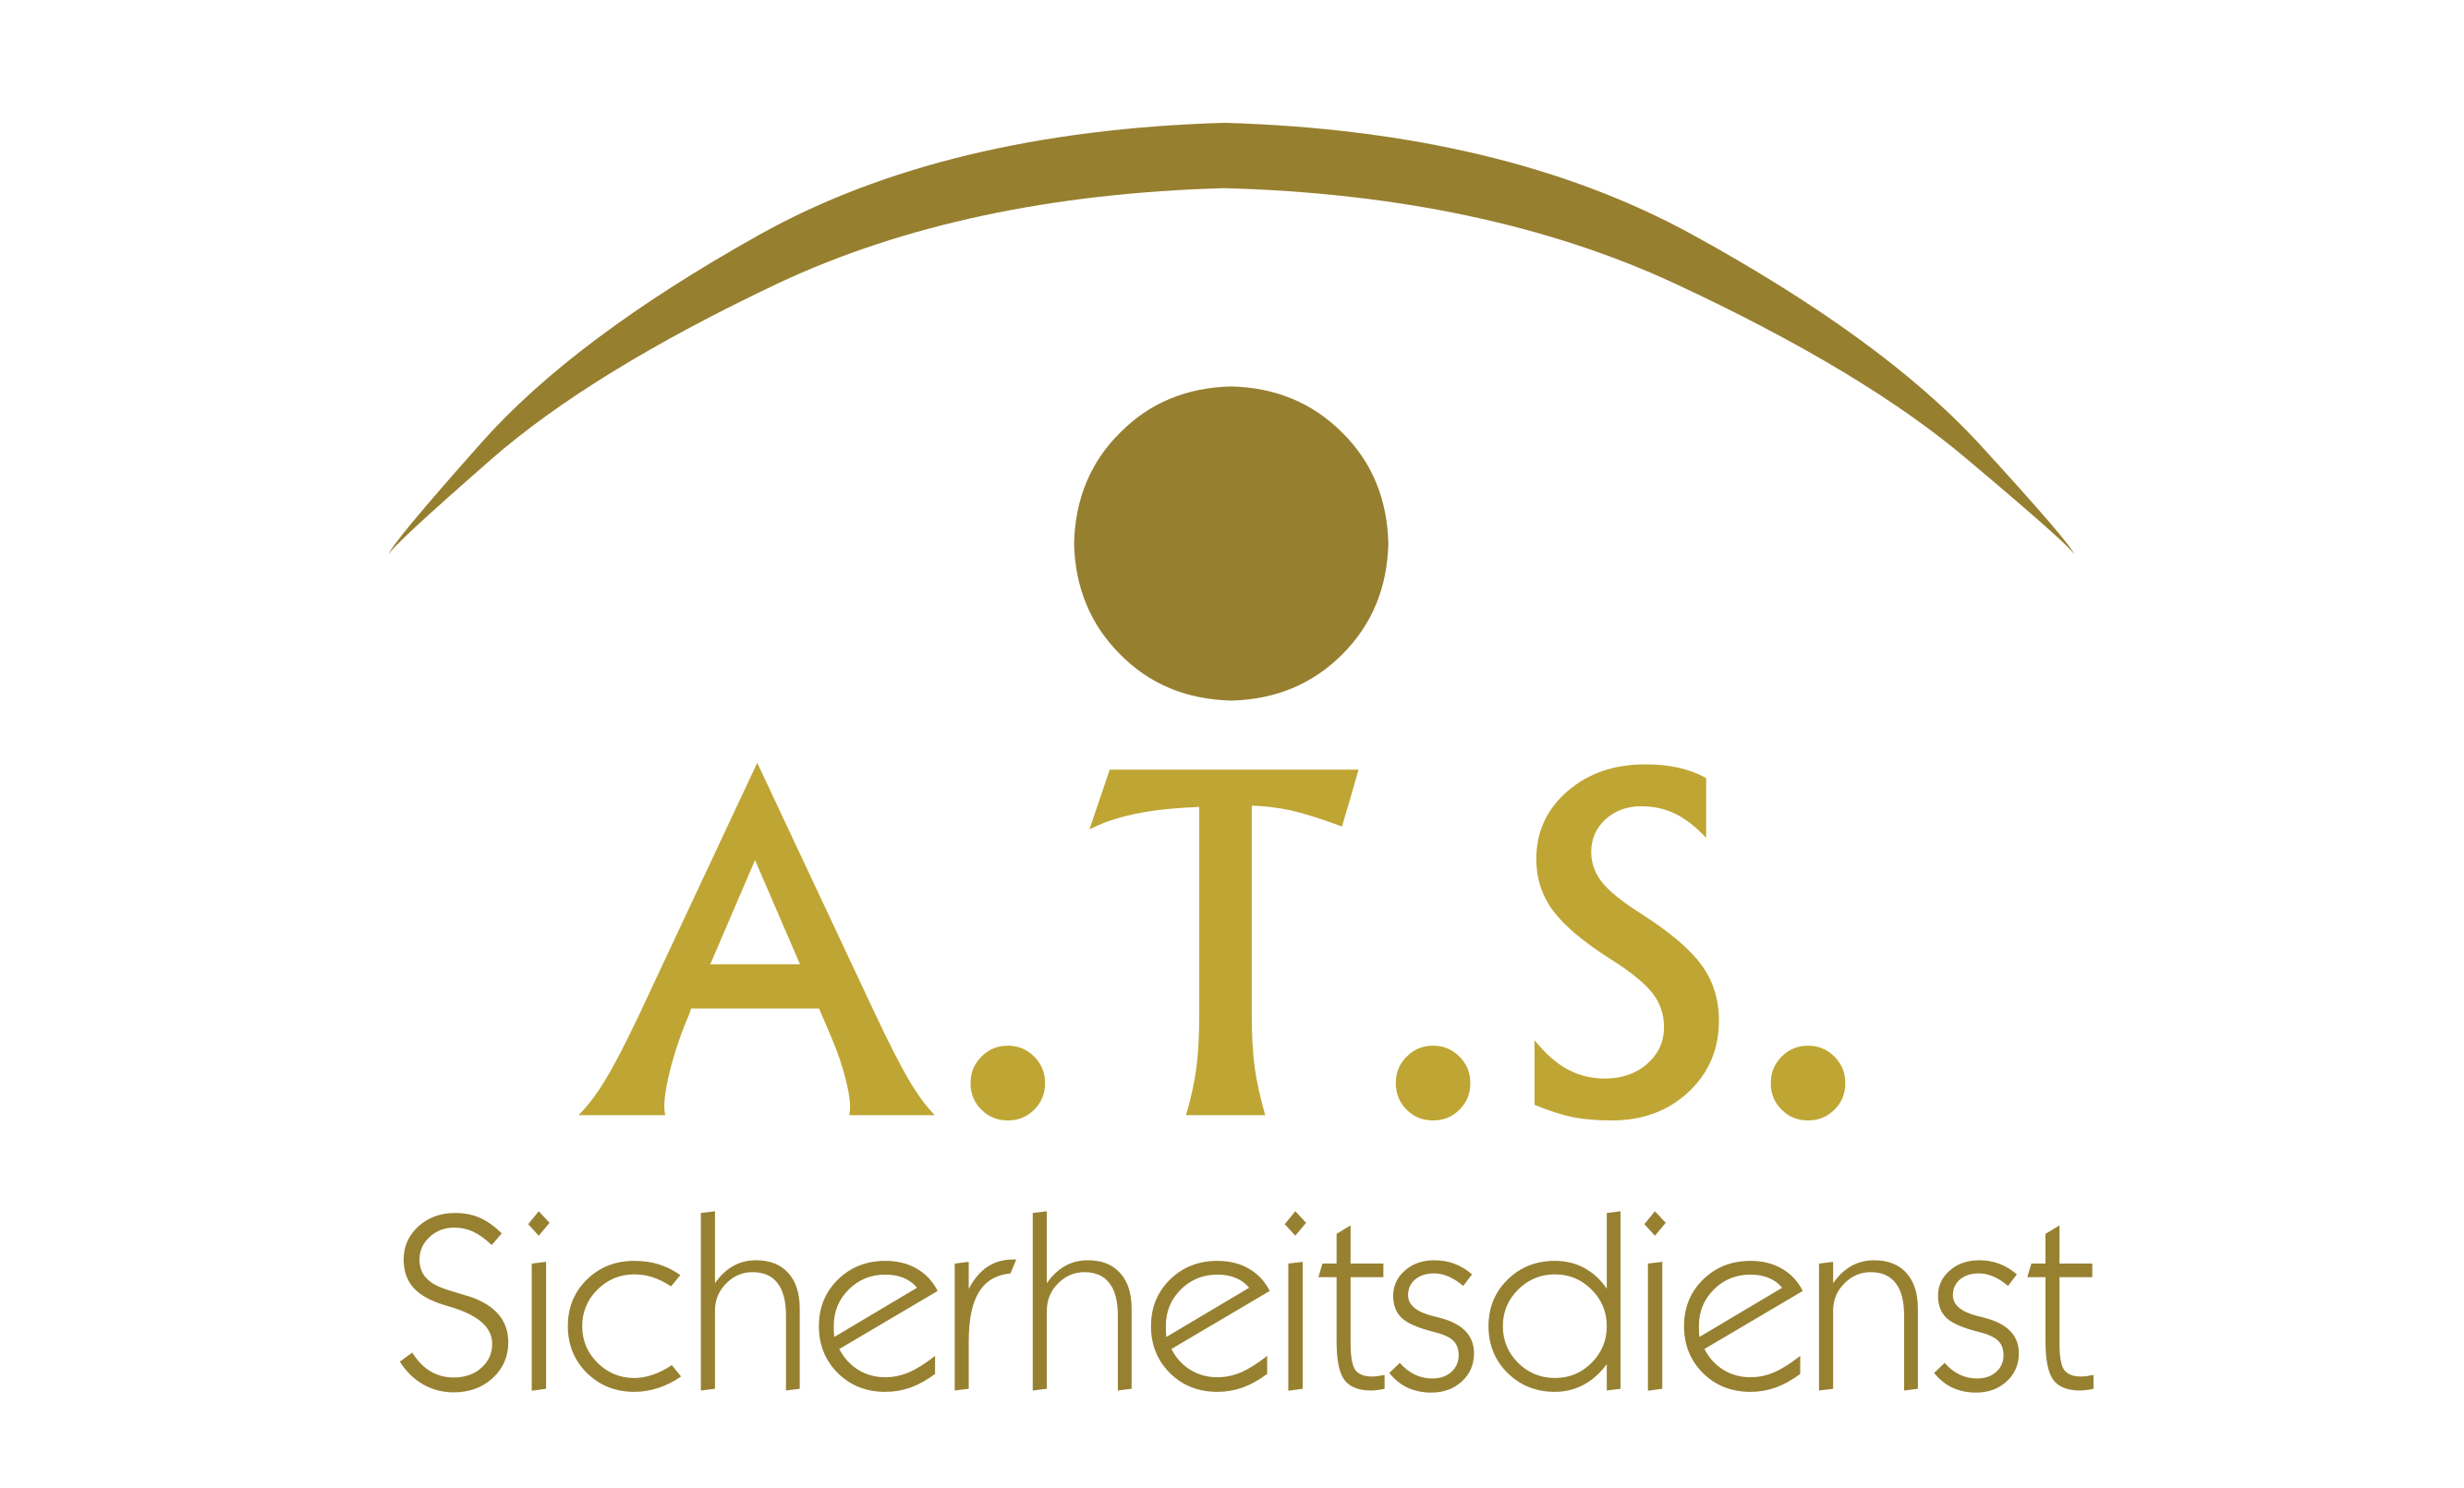 A.T.S. Sicherheitsdienst